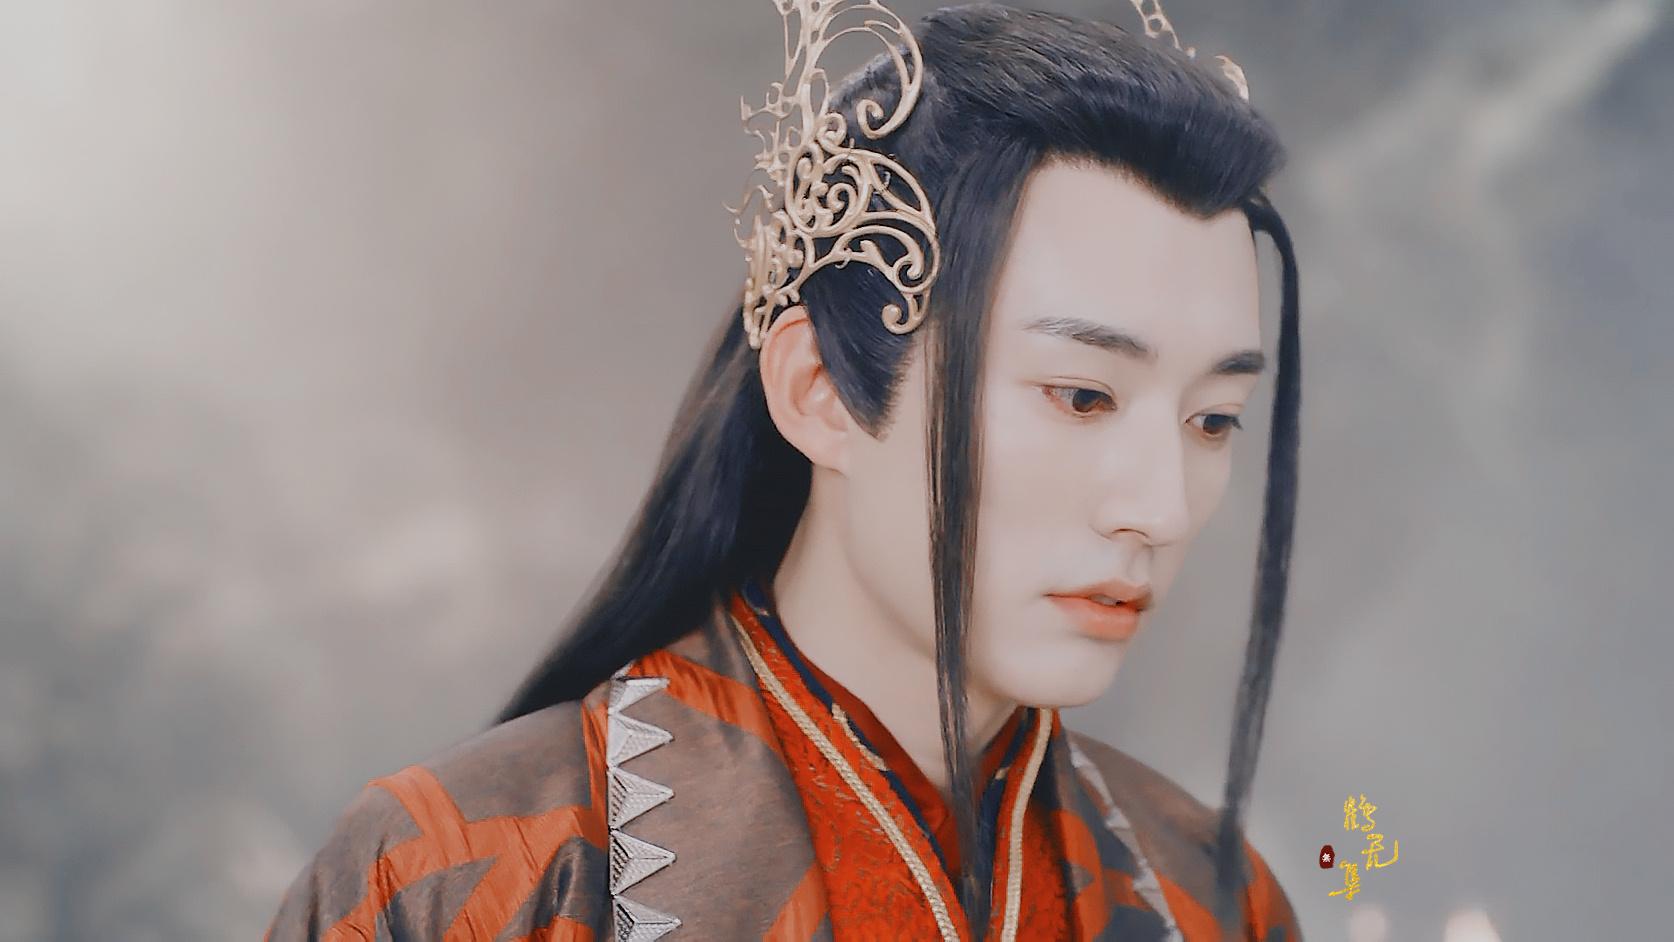 在《琉璃》中刘学义饰演男二号柏麟帝君,他爱着璇玑,又伤害着璇玑,让